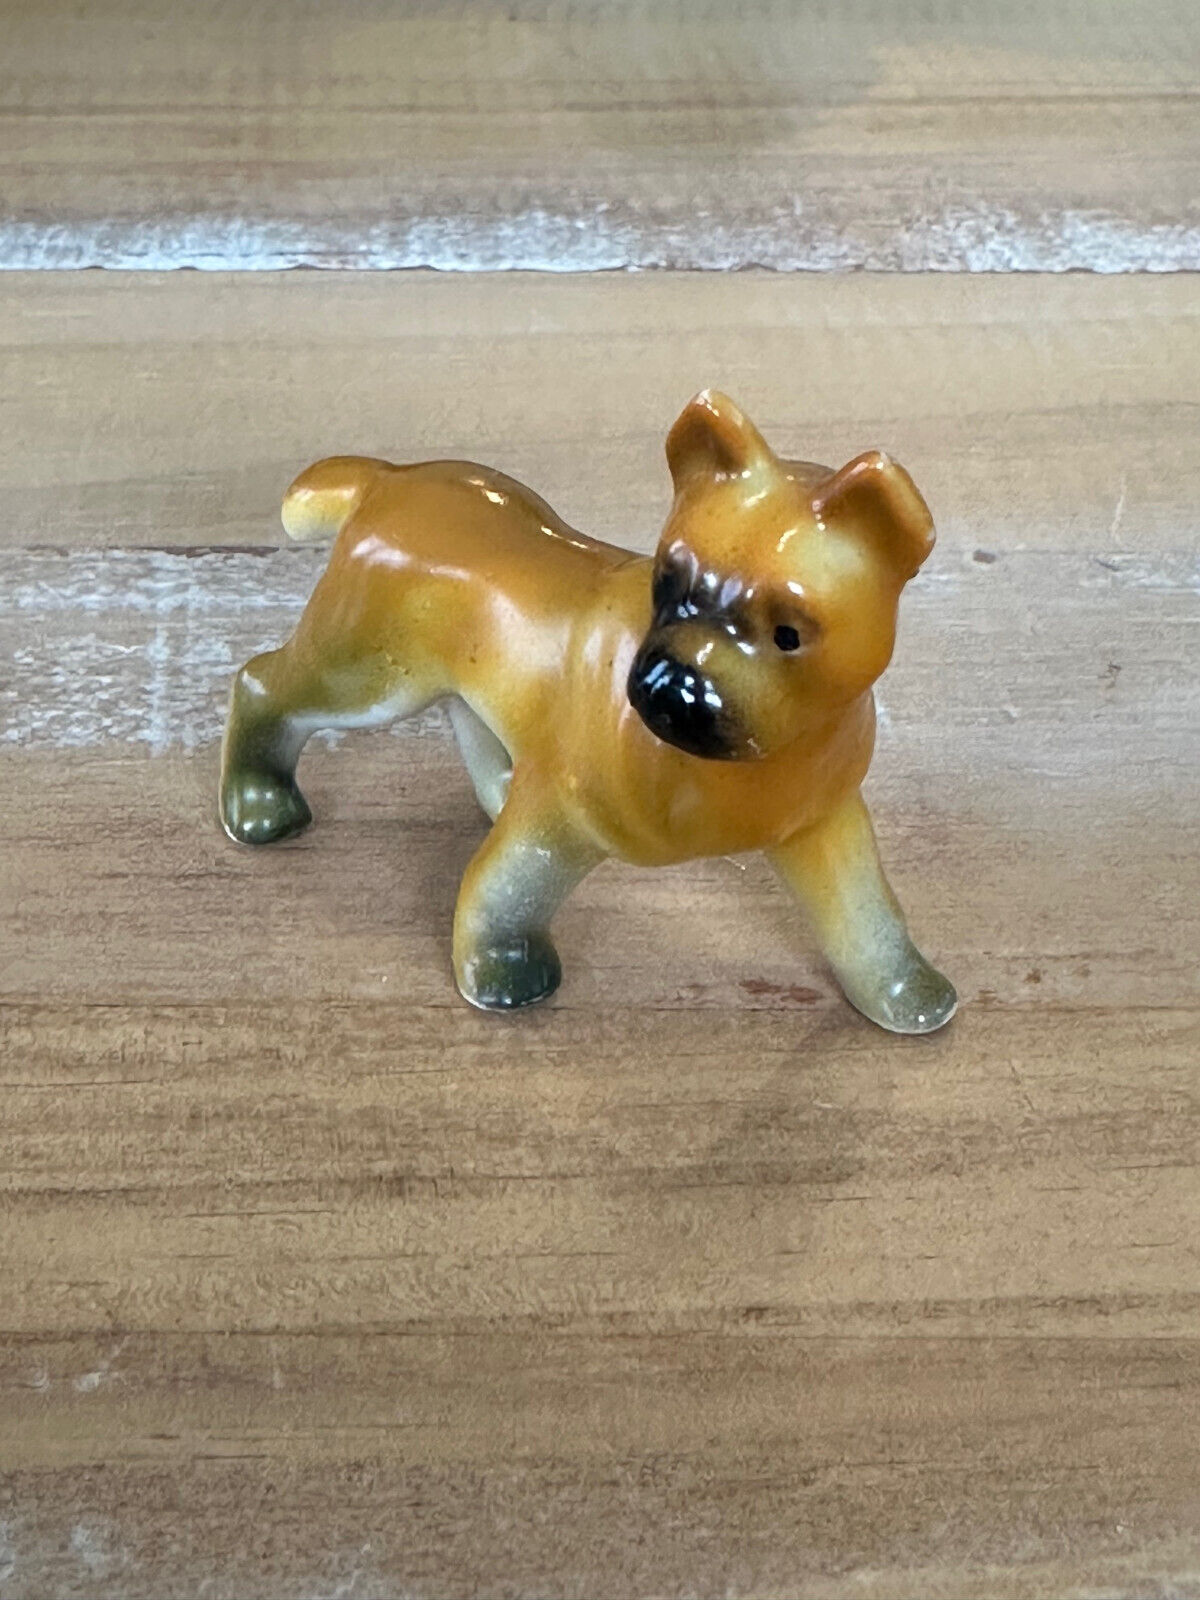 Vintage Hagen Renaker Style Ceramic Japan Boxer Dog Figurine Standing Porcelain